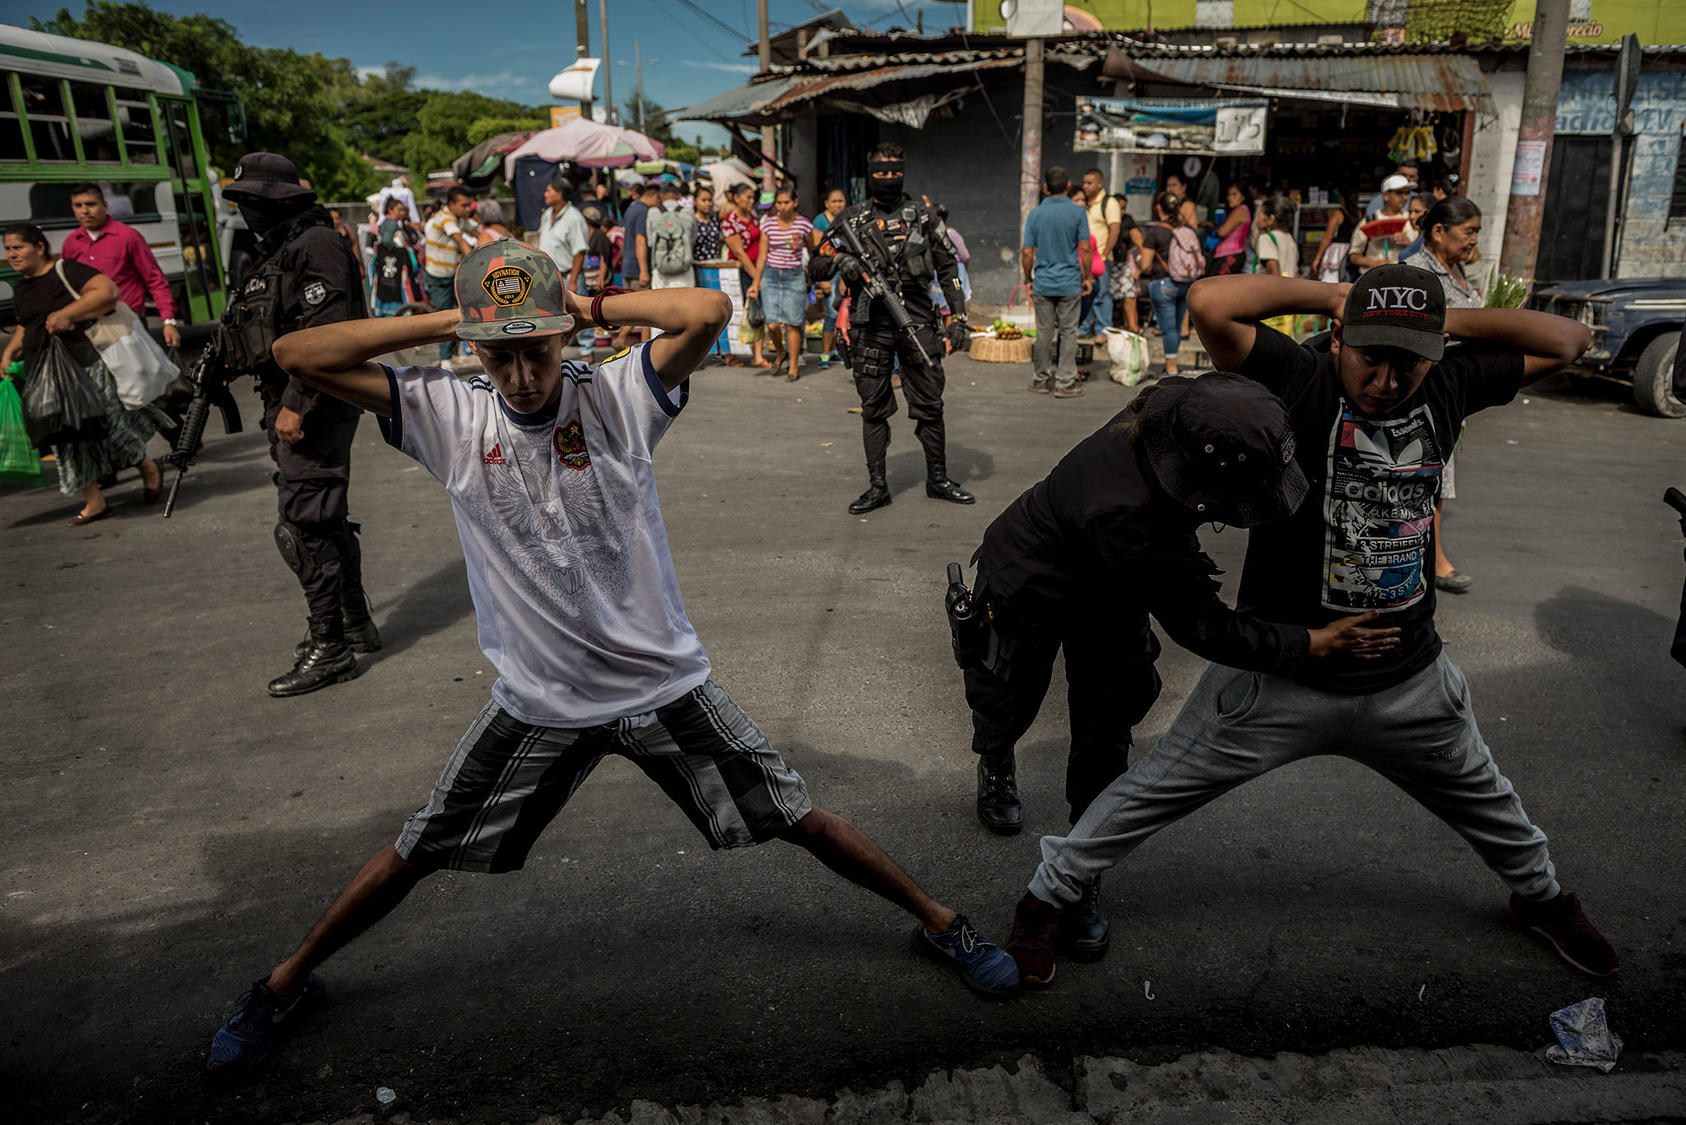 Agentes de policía detienen y requisan a dos hombres mientras patrullan el mercado de San Martín, donde se ha informado de actividad frecuente de pandillas, en San Salvador, el 26 de agosto de 2018. (Meridith Kohut/The New York Times)